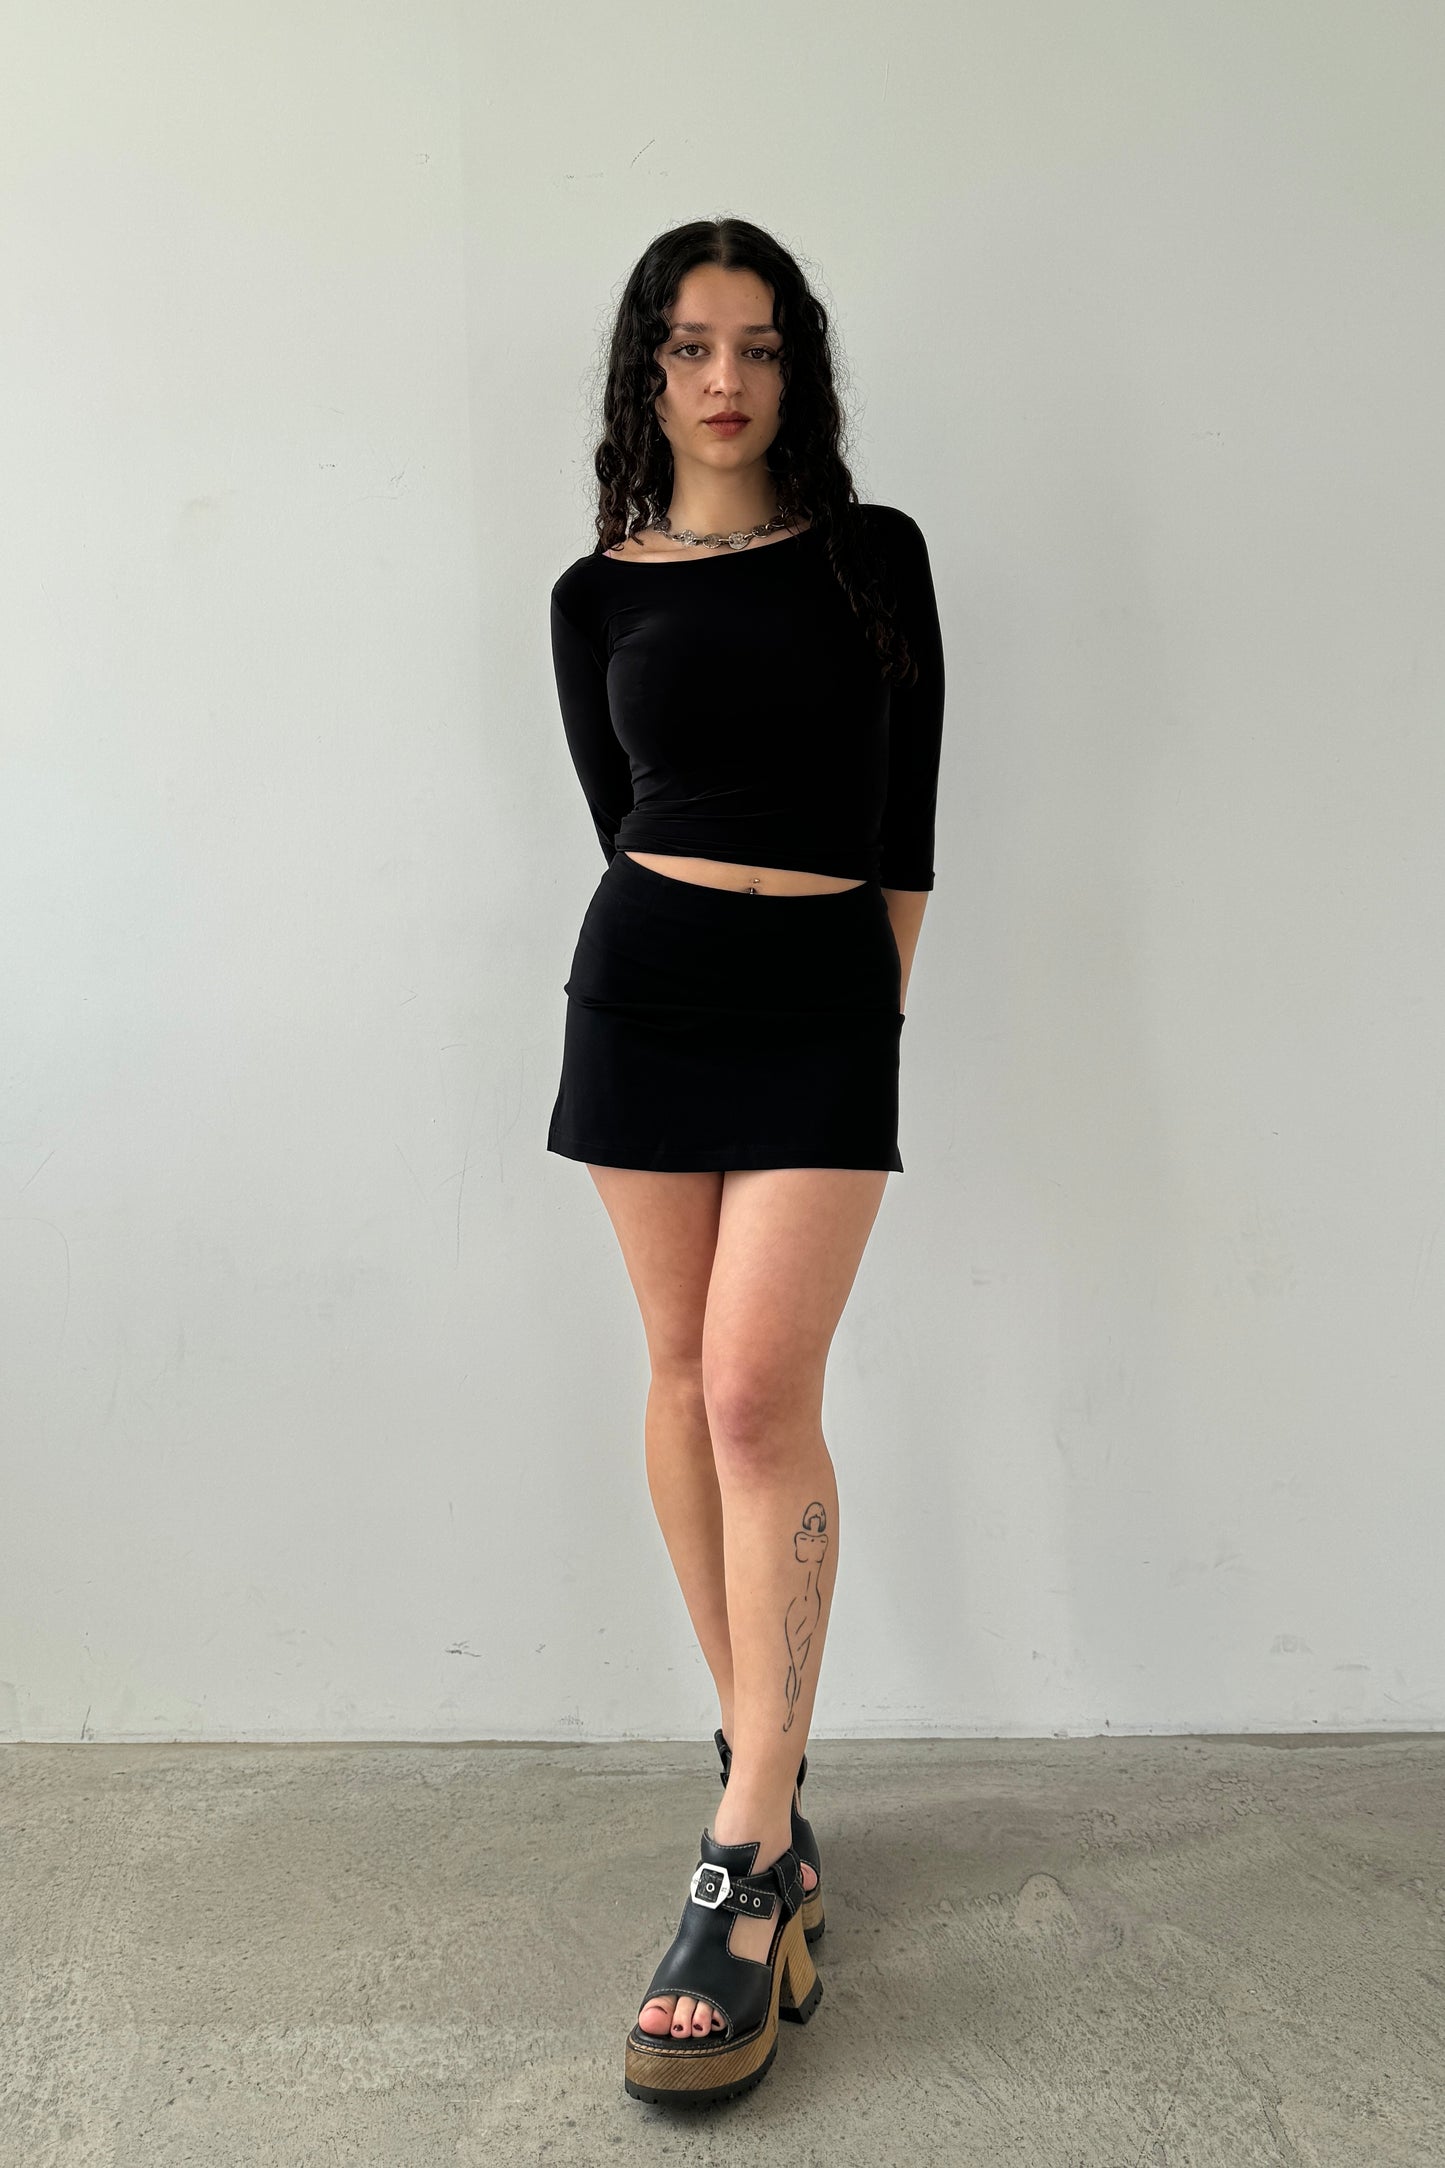 The Elle mini skirt - black